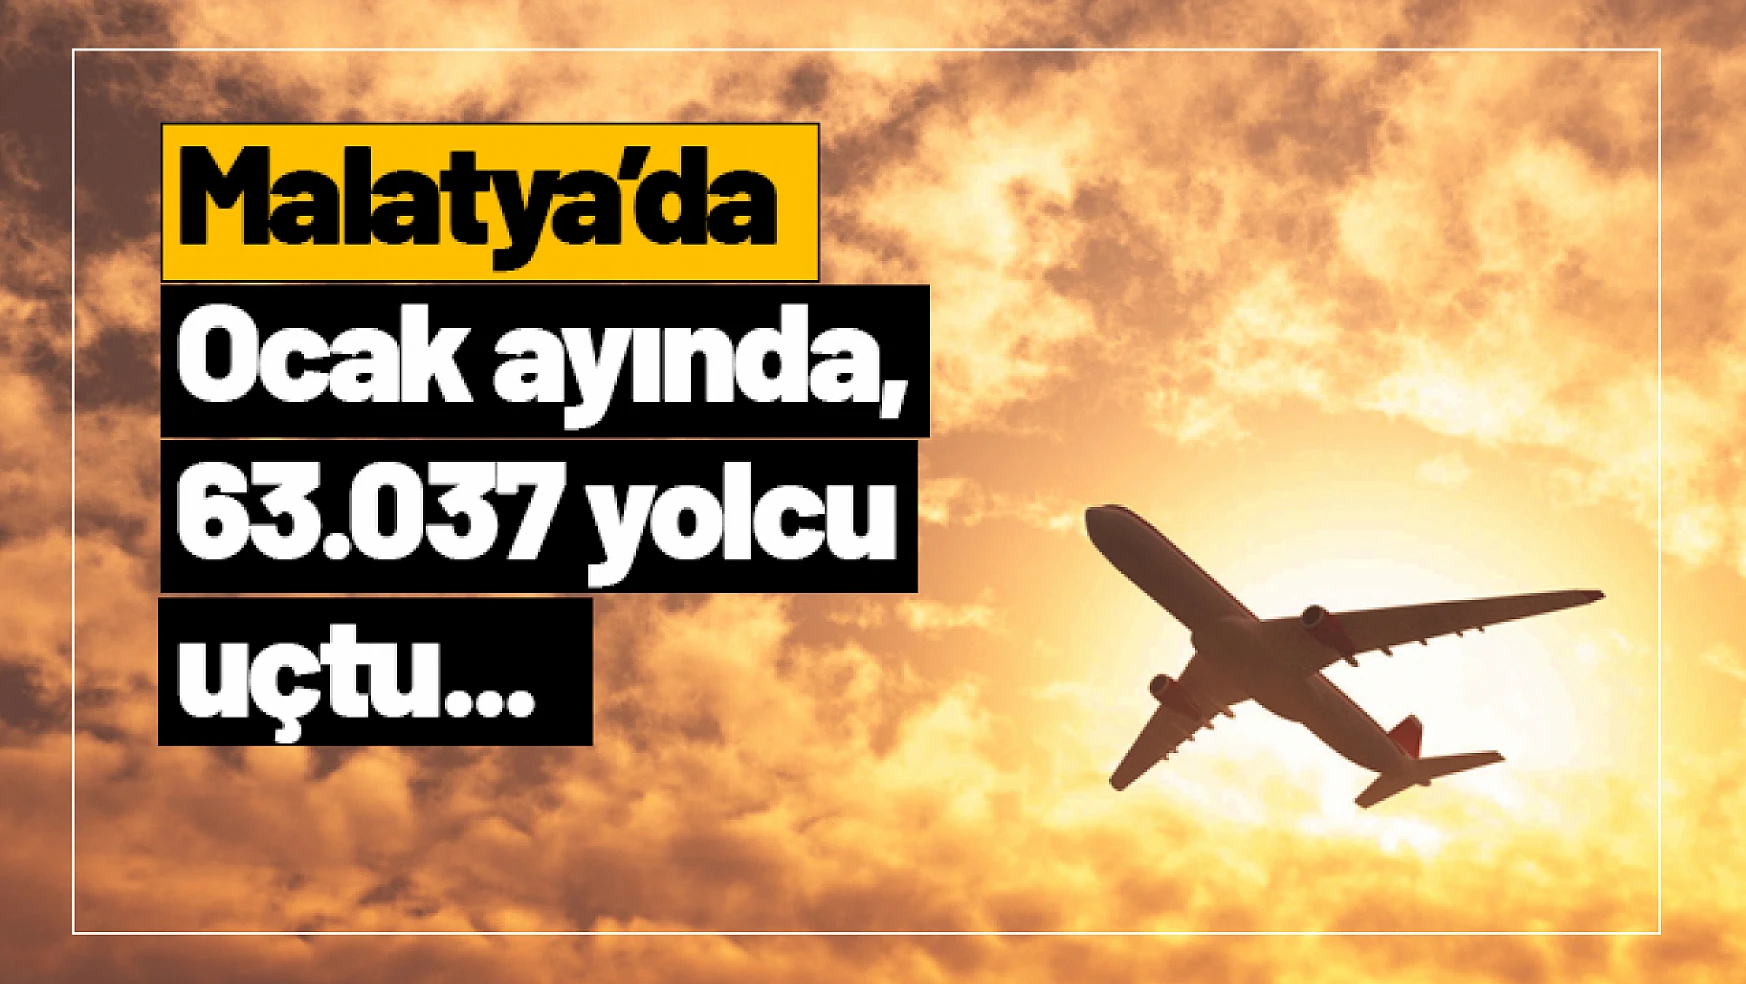 Malatya'da Ocak ayında, 63.037 yolcu uçtu...